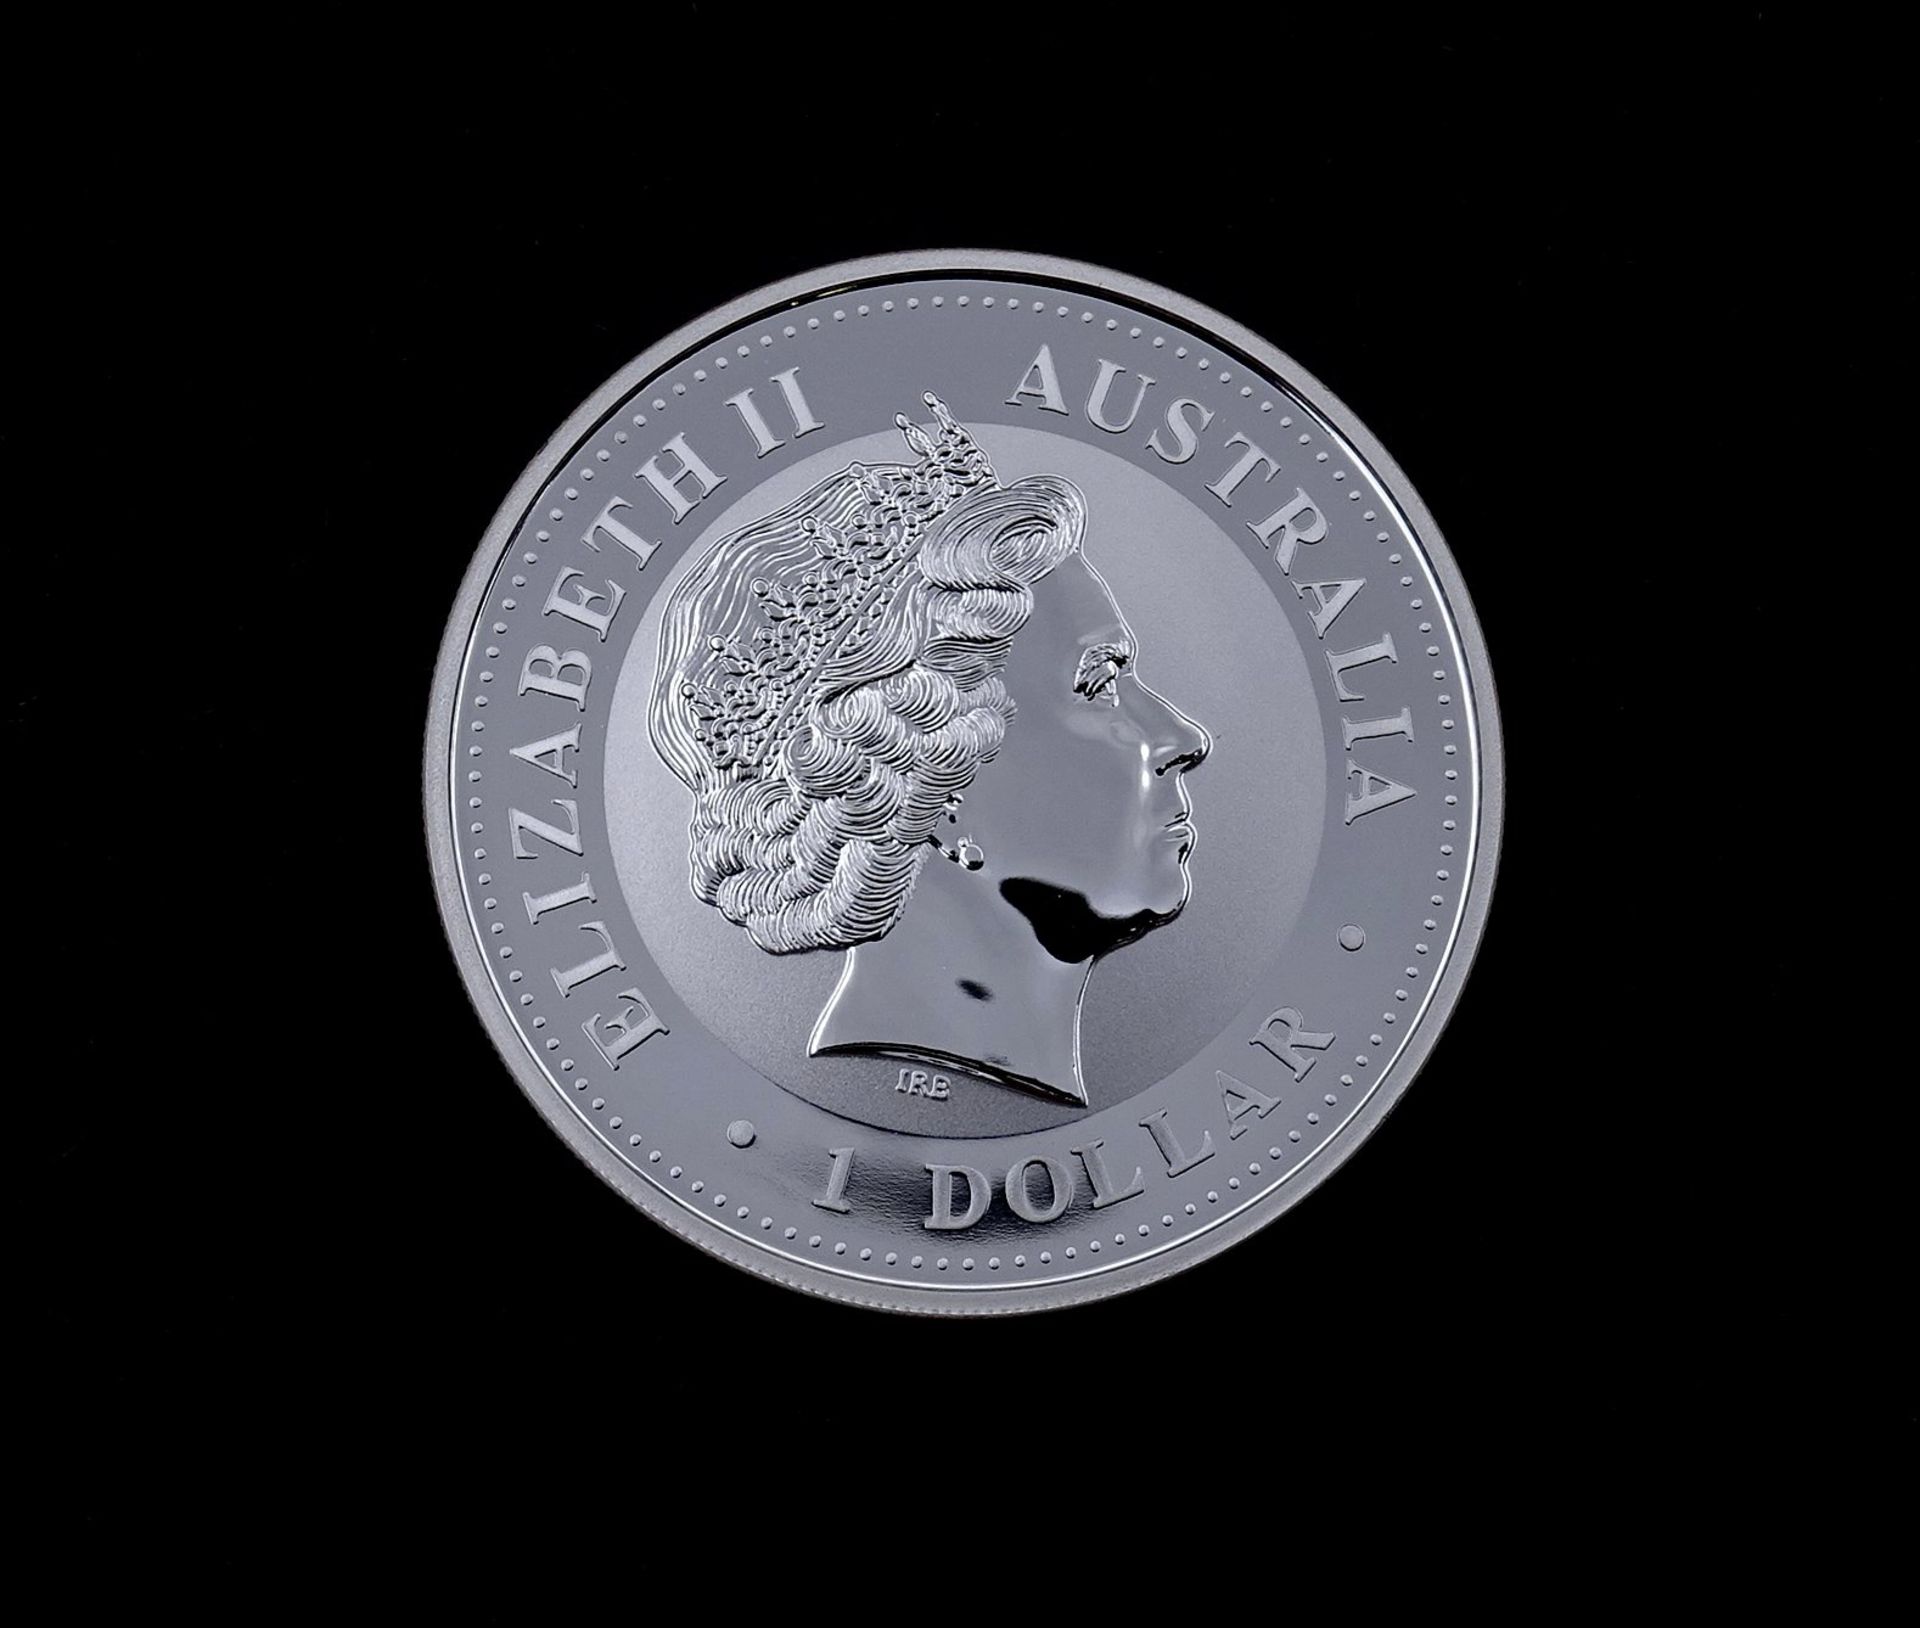 1 Dollar 2002 1 OZ Feinsilber, Australia Elizabeth II - Image 2 of 2